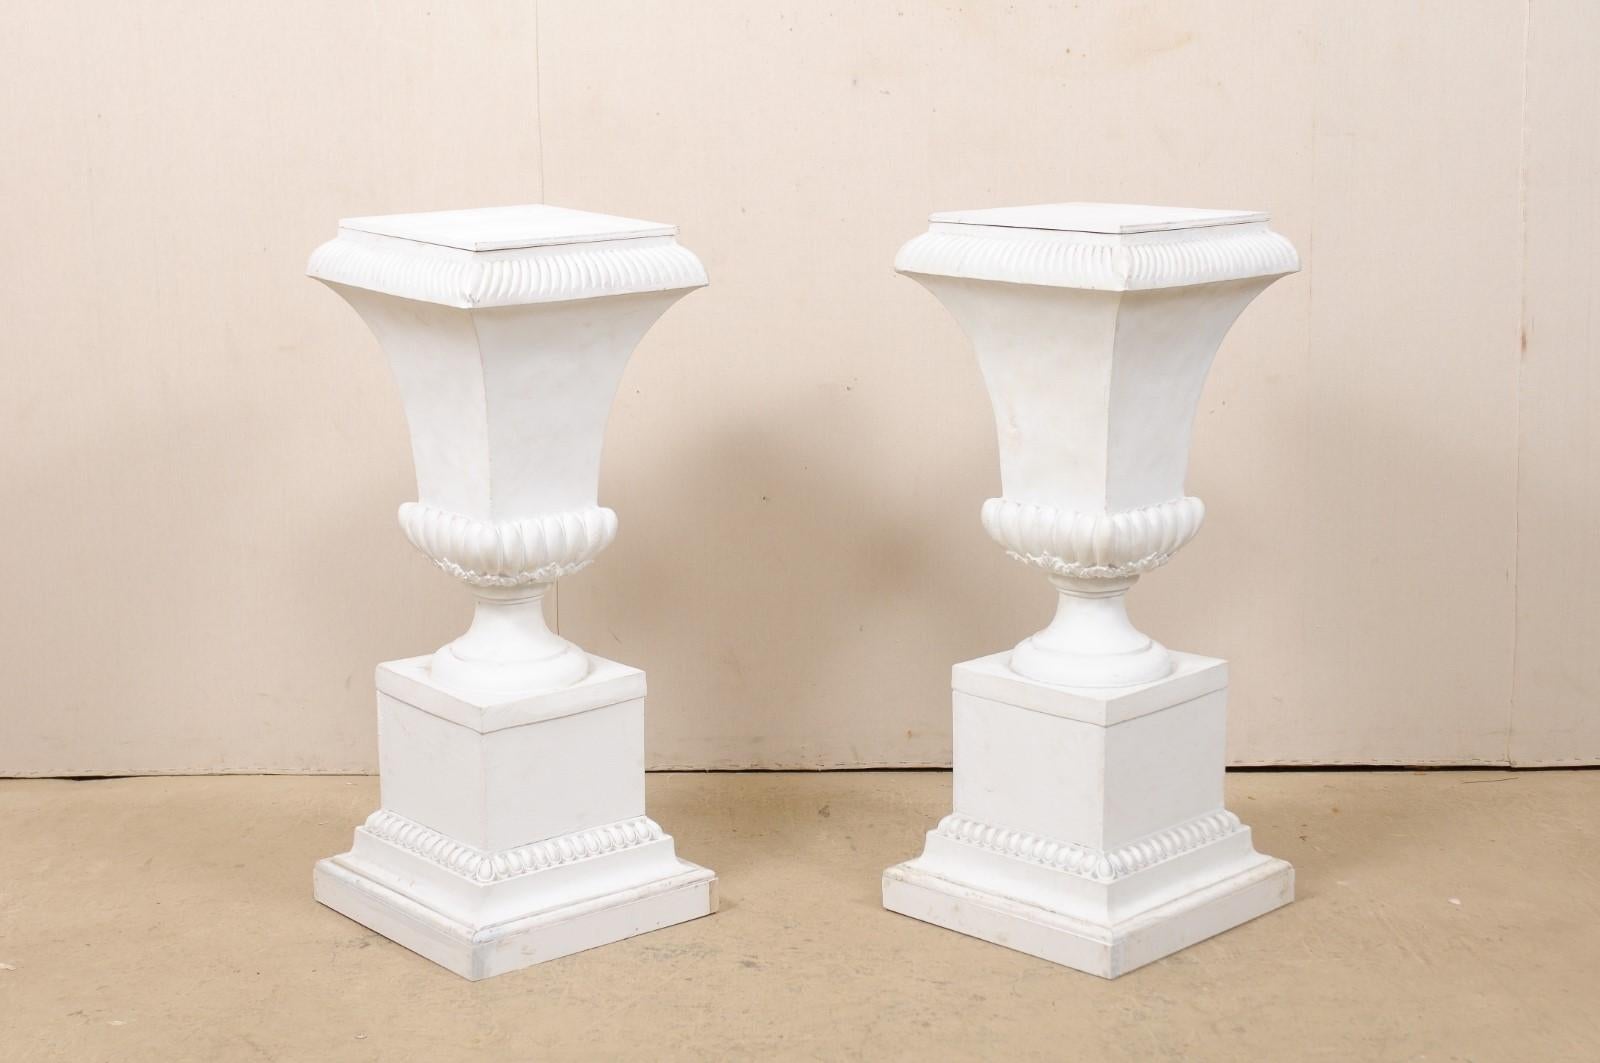 Pair of Fiberglass Urn-Shaped Pedestals, Standing 1